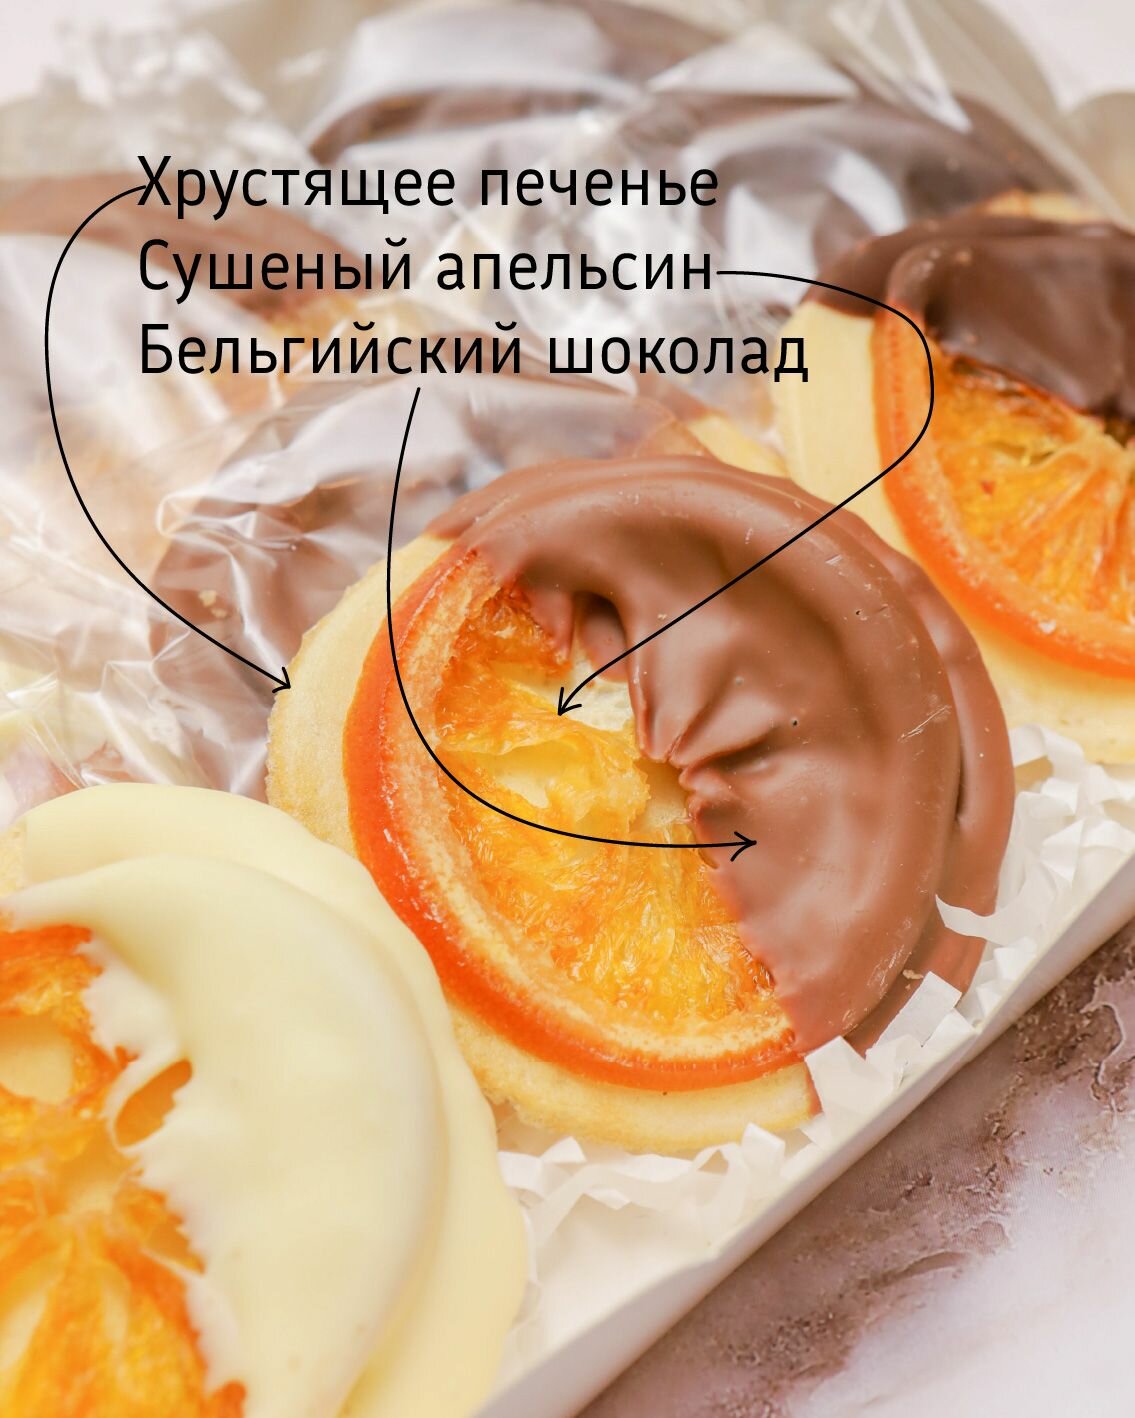 Апельсин в шоколаде на хрустящем печенье, ассорти - фотография № 2